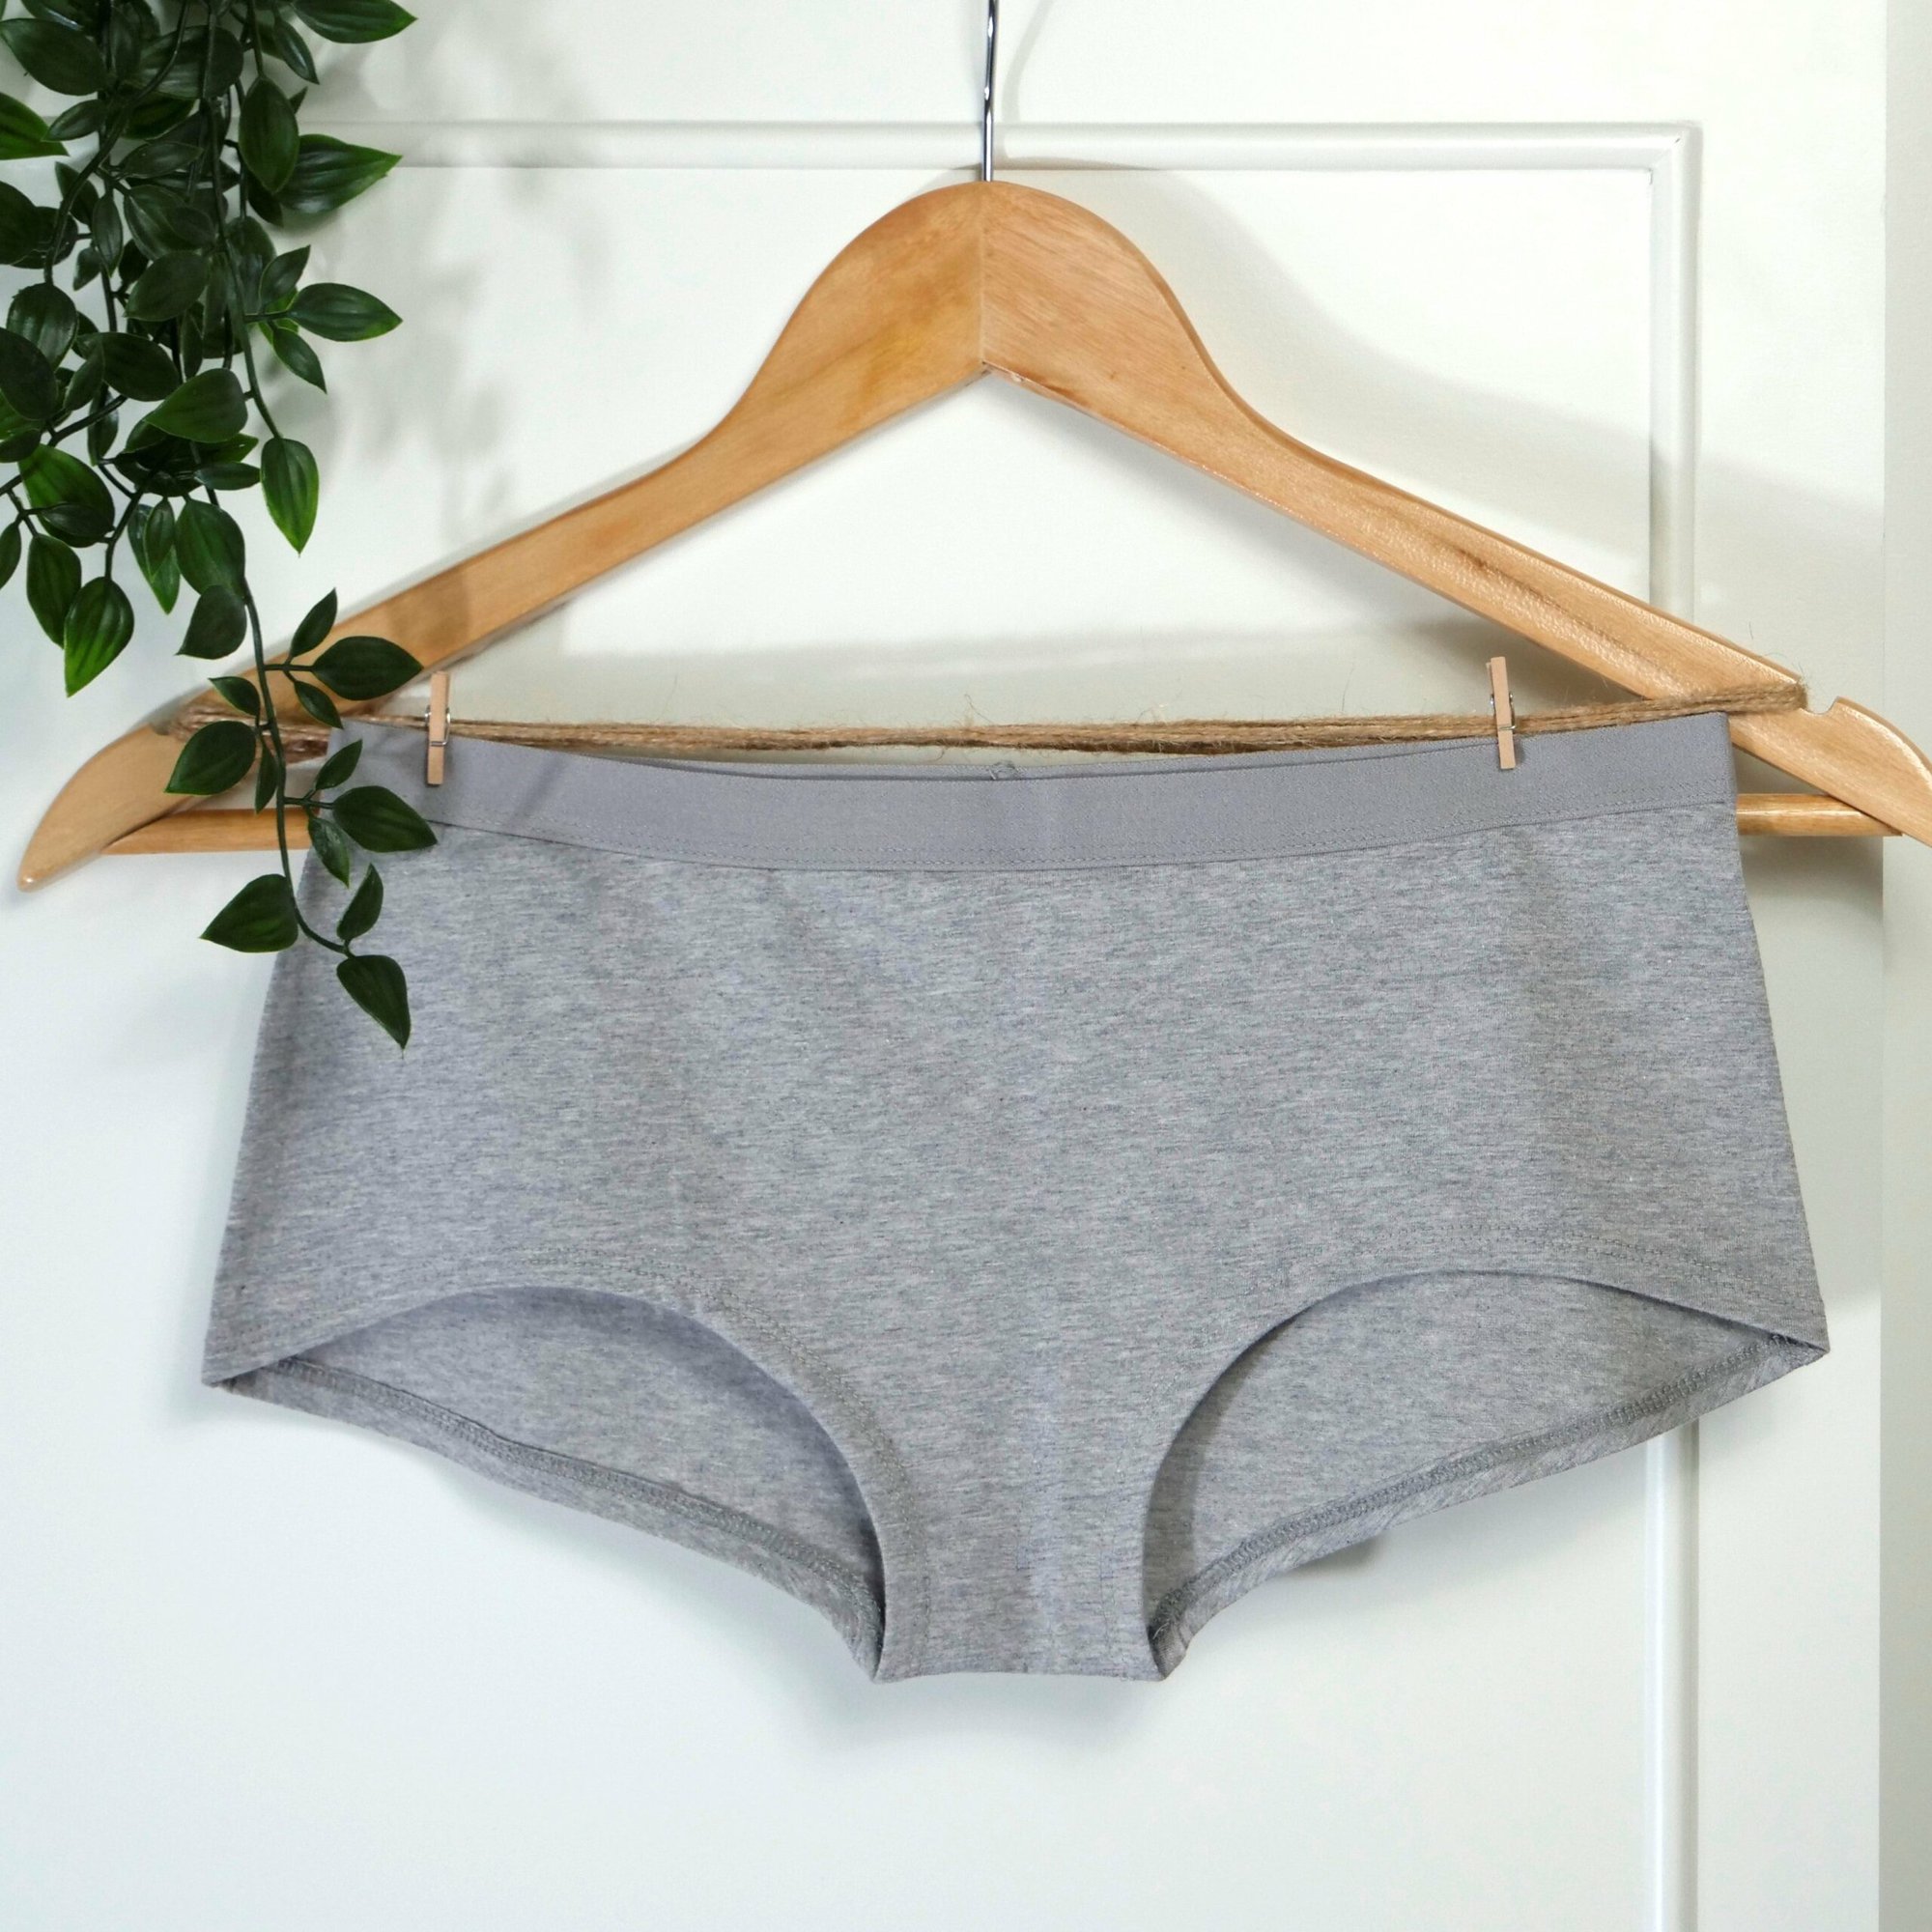 Heather Grey Organic Cotton Women's Underwear